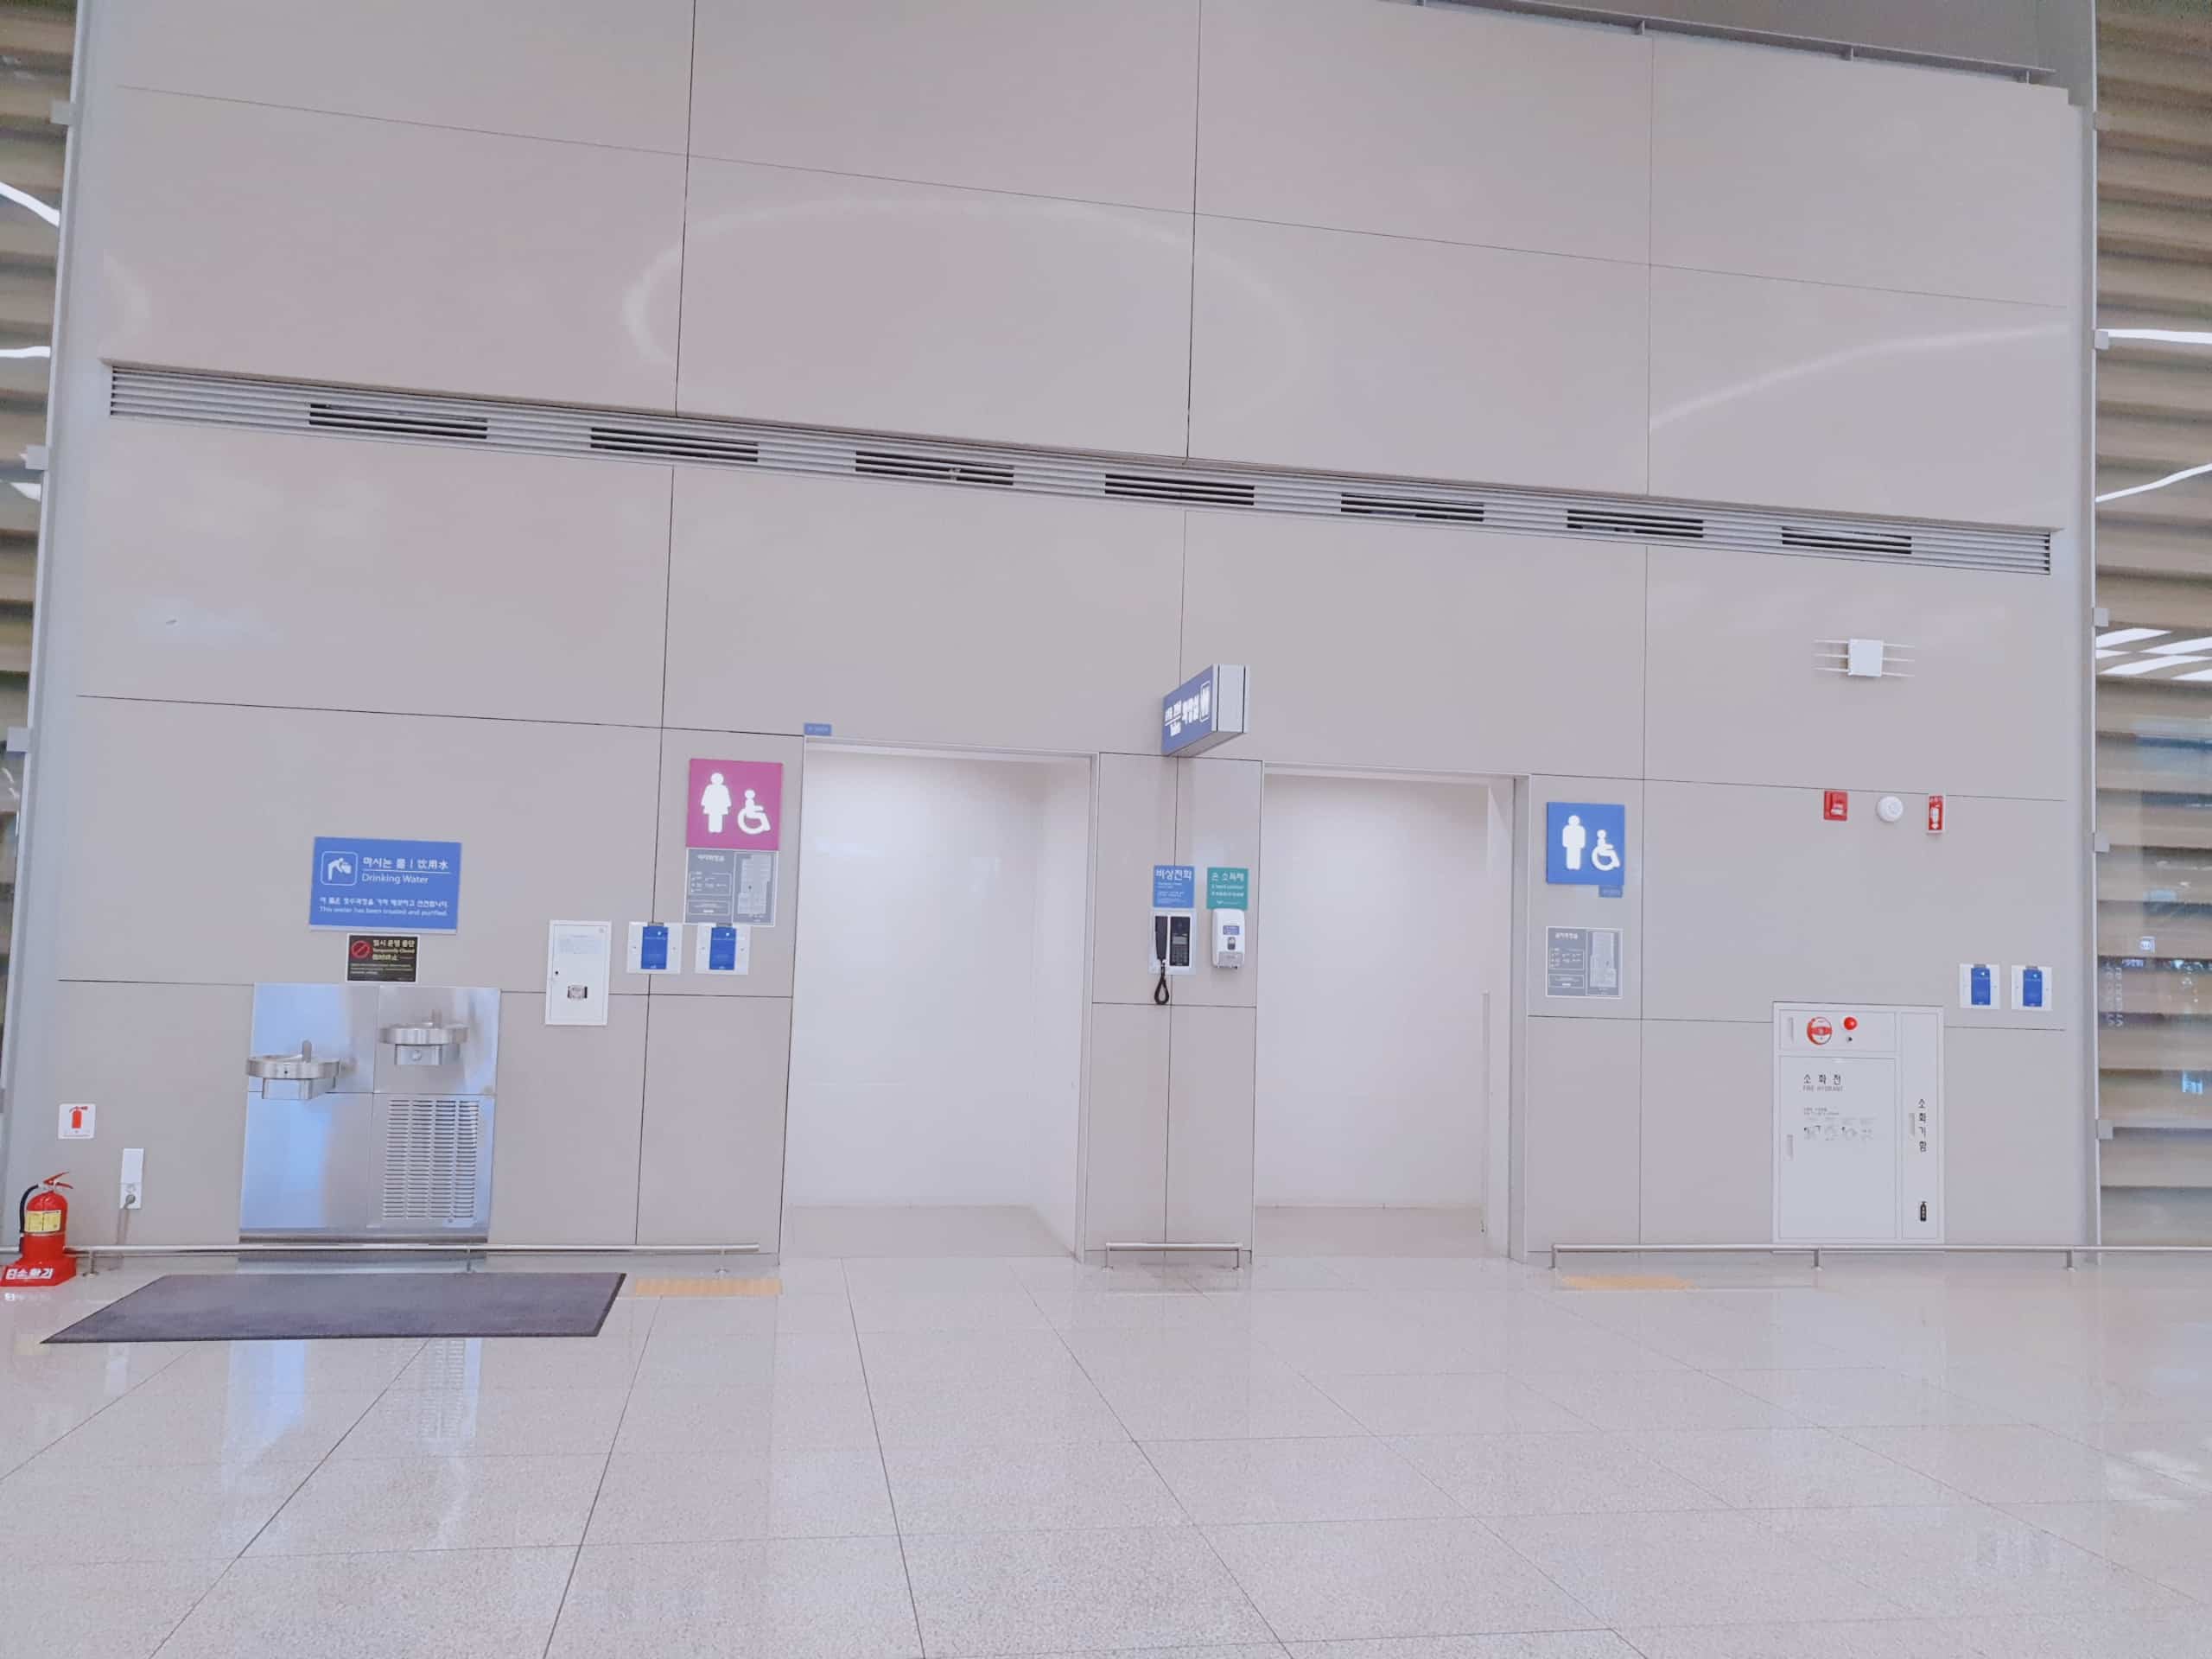 장애인 화장실 0 : 넓고 평탄한 인천국제공항 제2여객터미널 내에 위치한 장애인 화장실 입구.